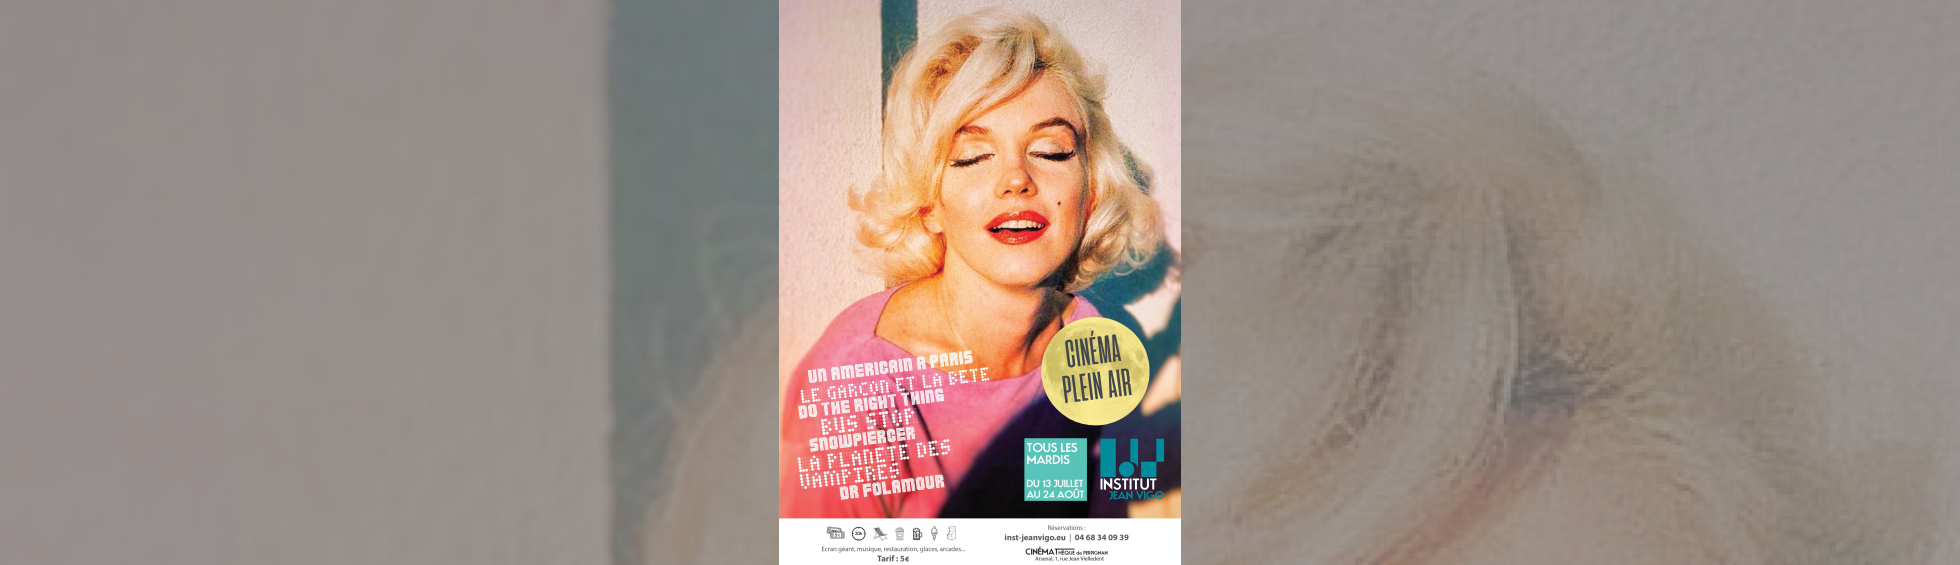 affiche cinéma en plein air - photo couleur portrait Marilyn Monroe